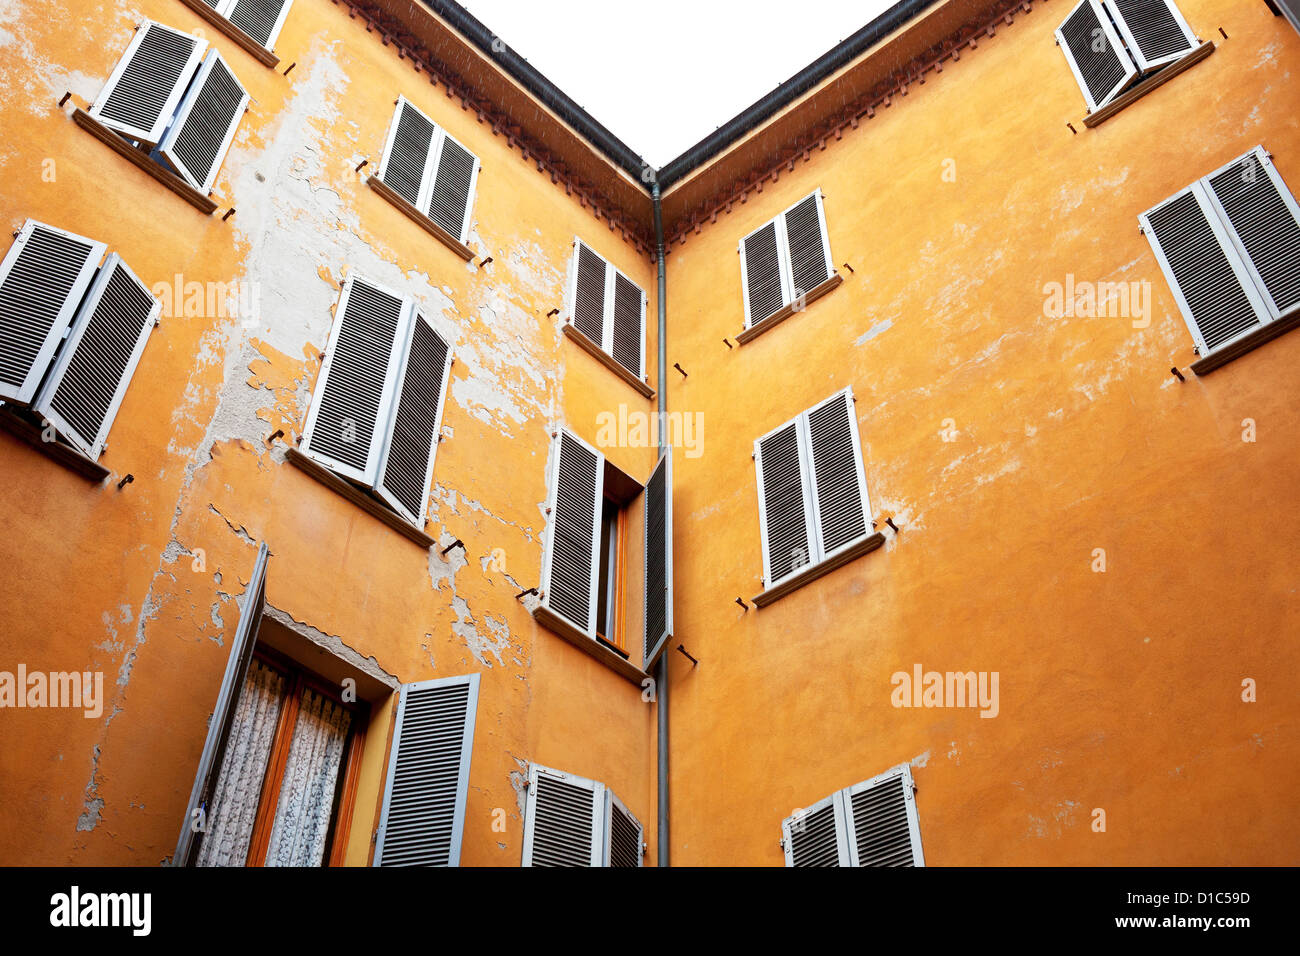 Maison en pierre typique italien surround murs terrasse urbaine Banque D'Images